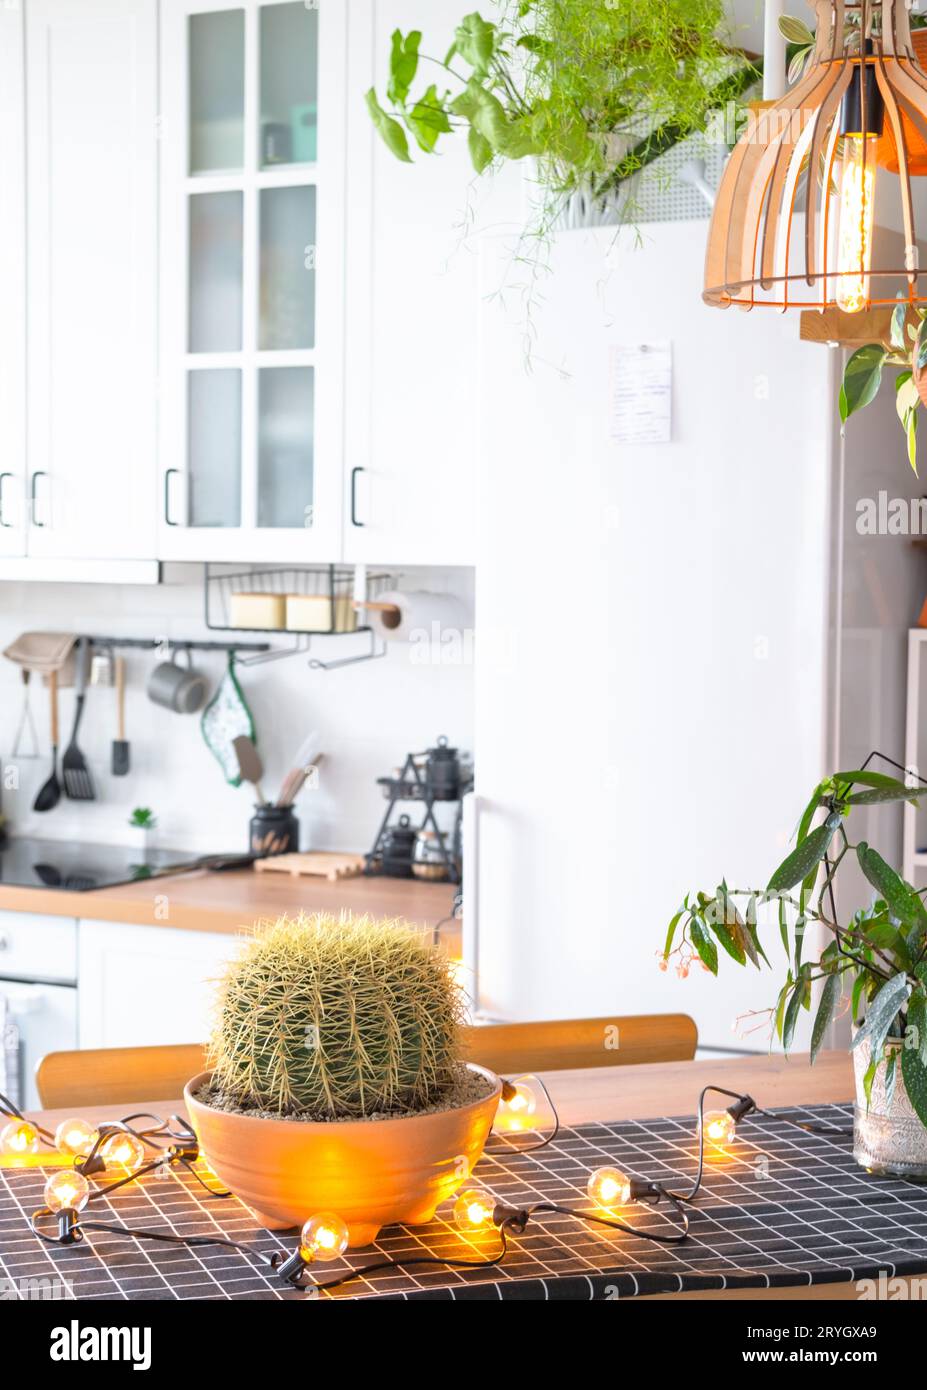 Moderna cucina rustica di colore bianco chiaro decorata con piante in vaso e utensili da cucina in stile loft. Interno di una casa con piante da casa Foto Stock